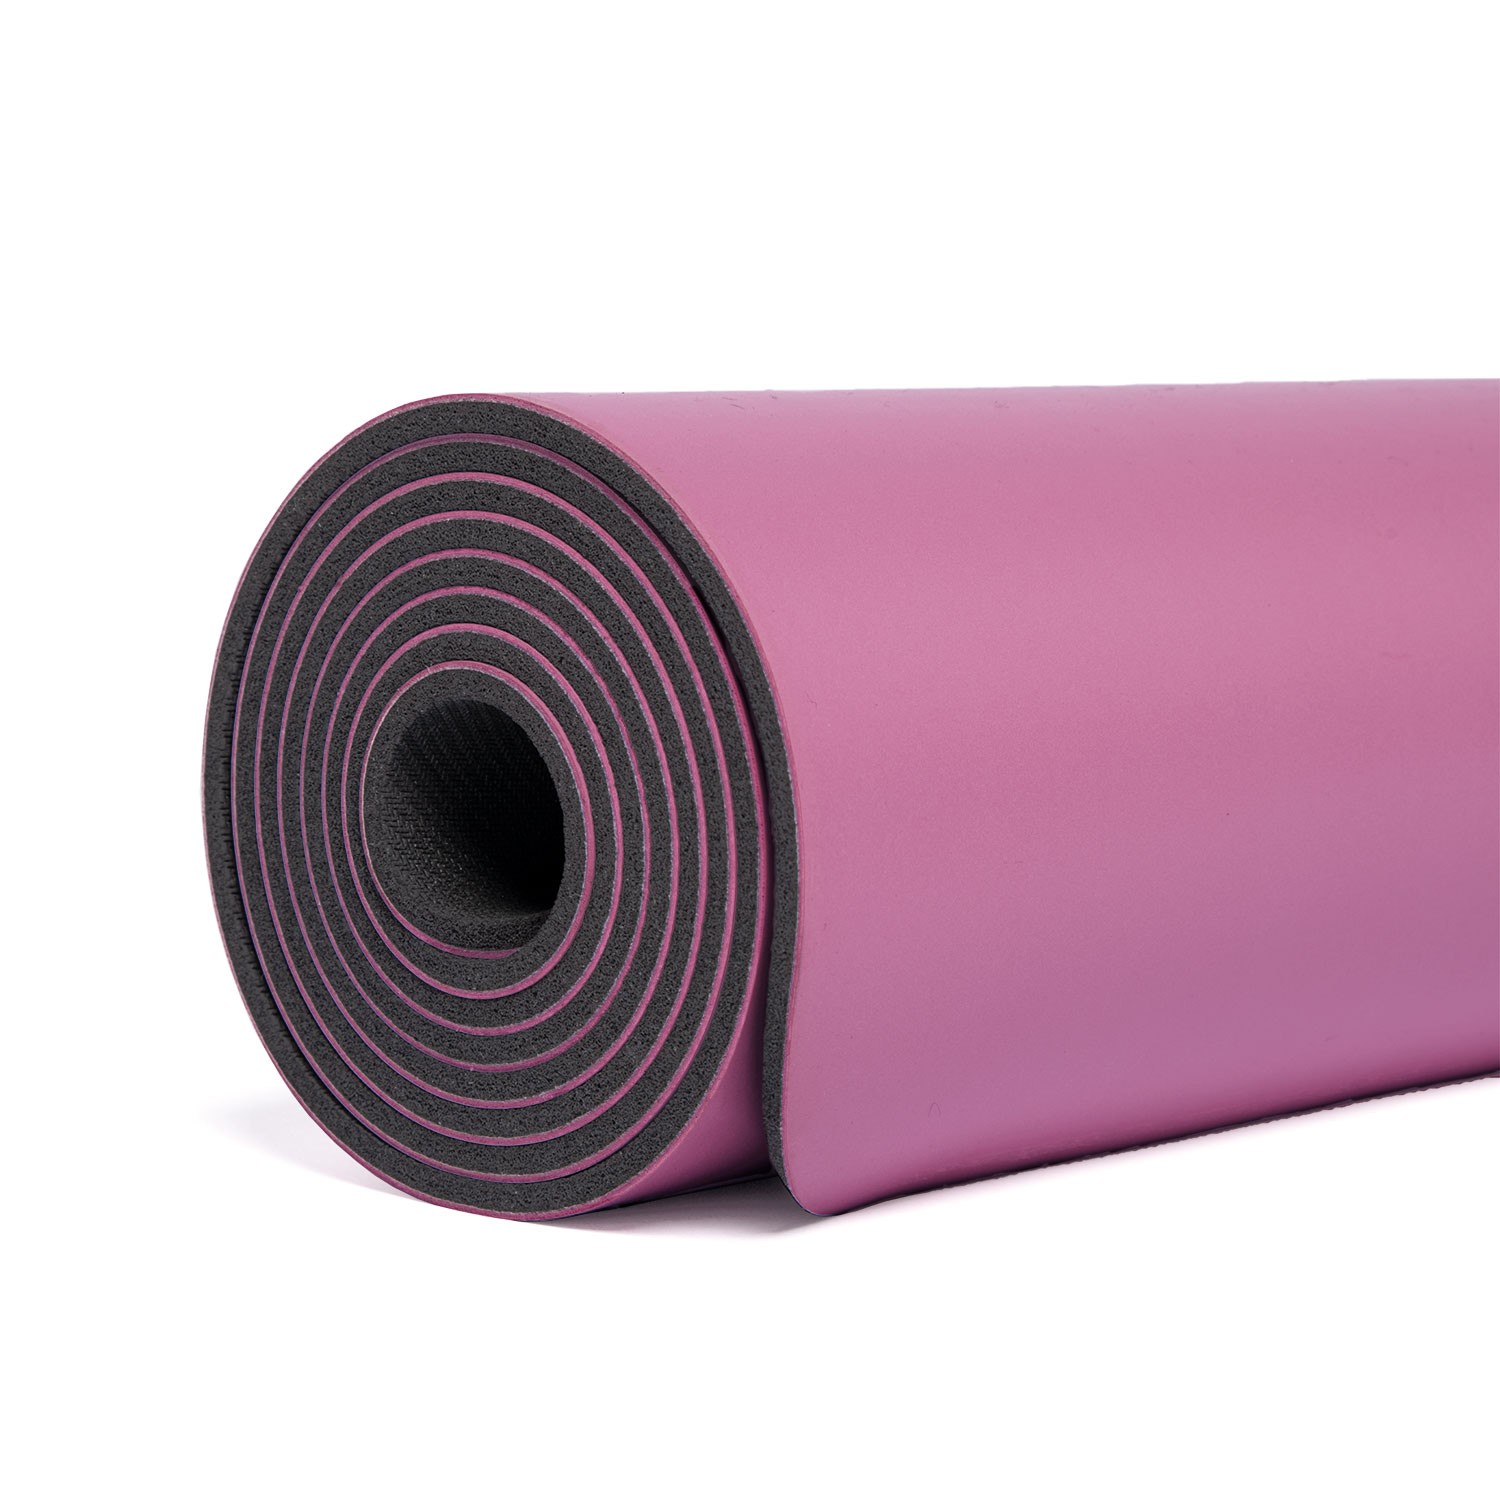 GoZone Tapis de Yoga Pliable – Violette Durable et léger 